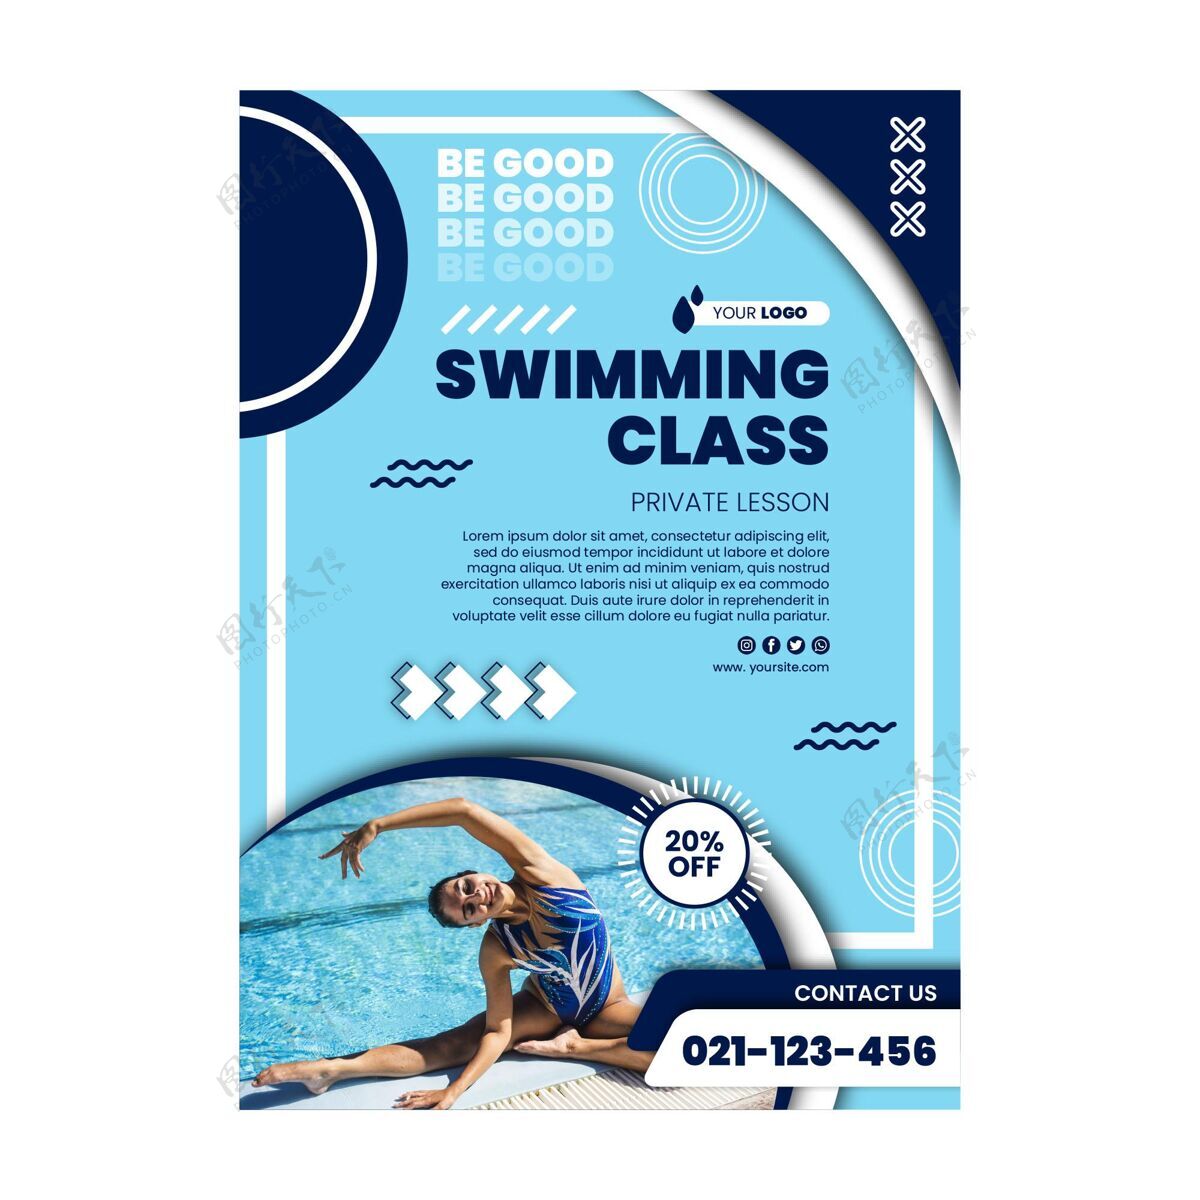 生活方式游泳课海报附照片运动运动准备打印